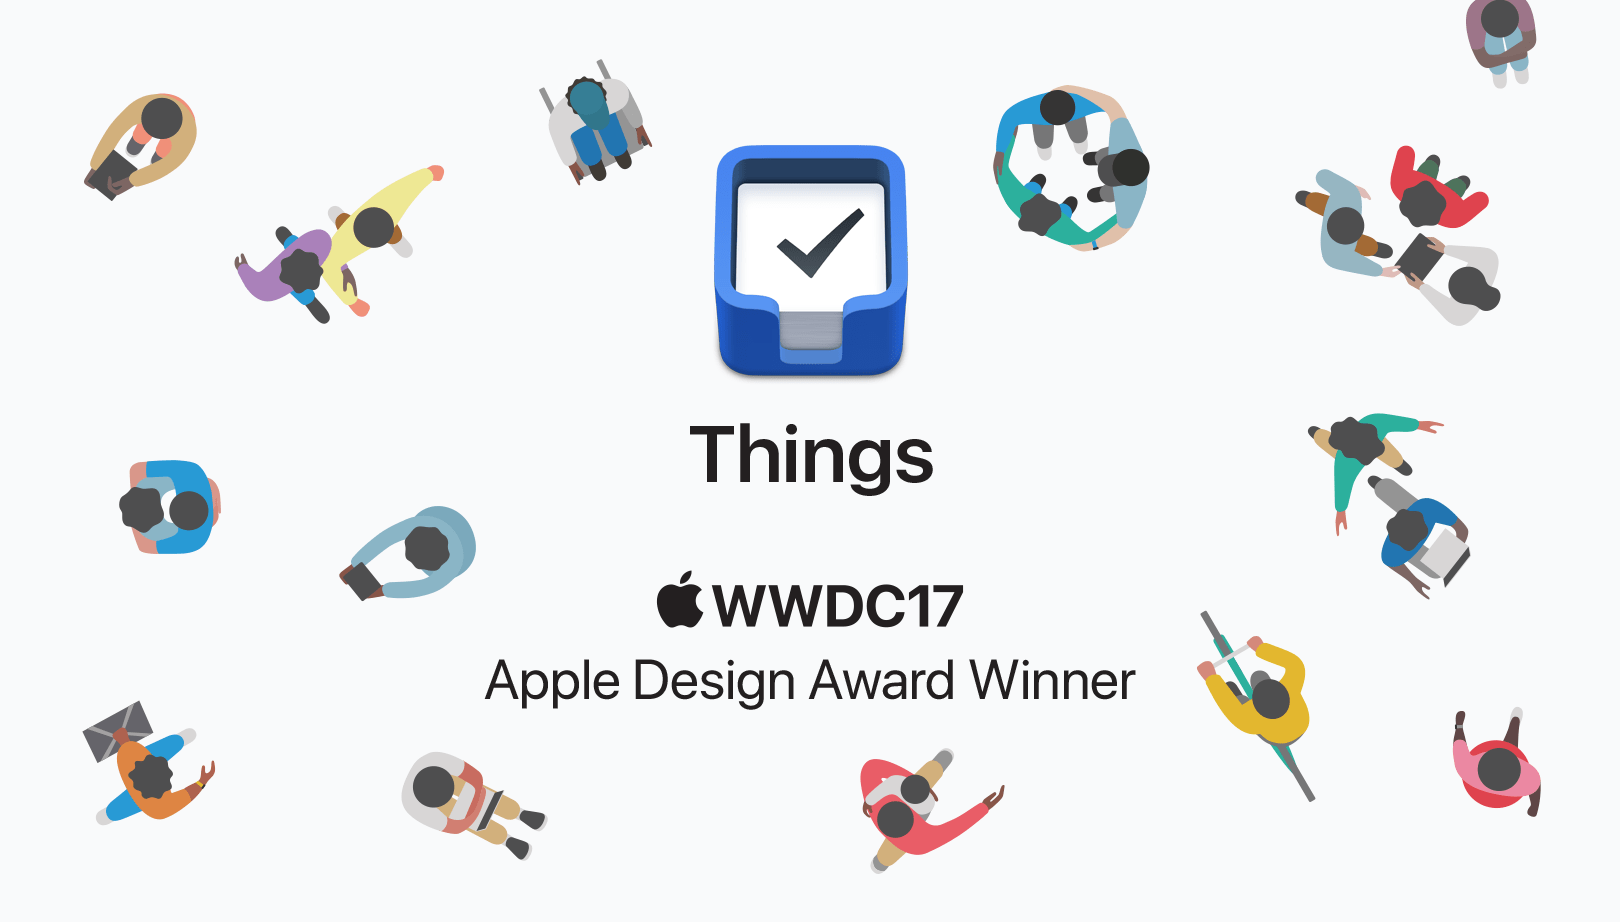 Things - Apple Design Award Winner 2017